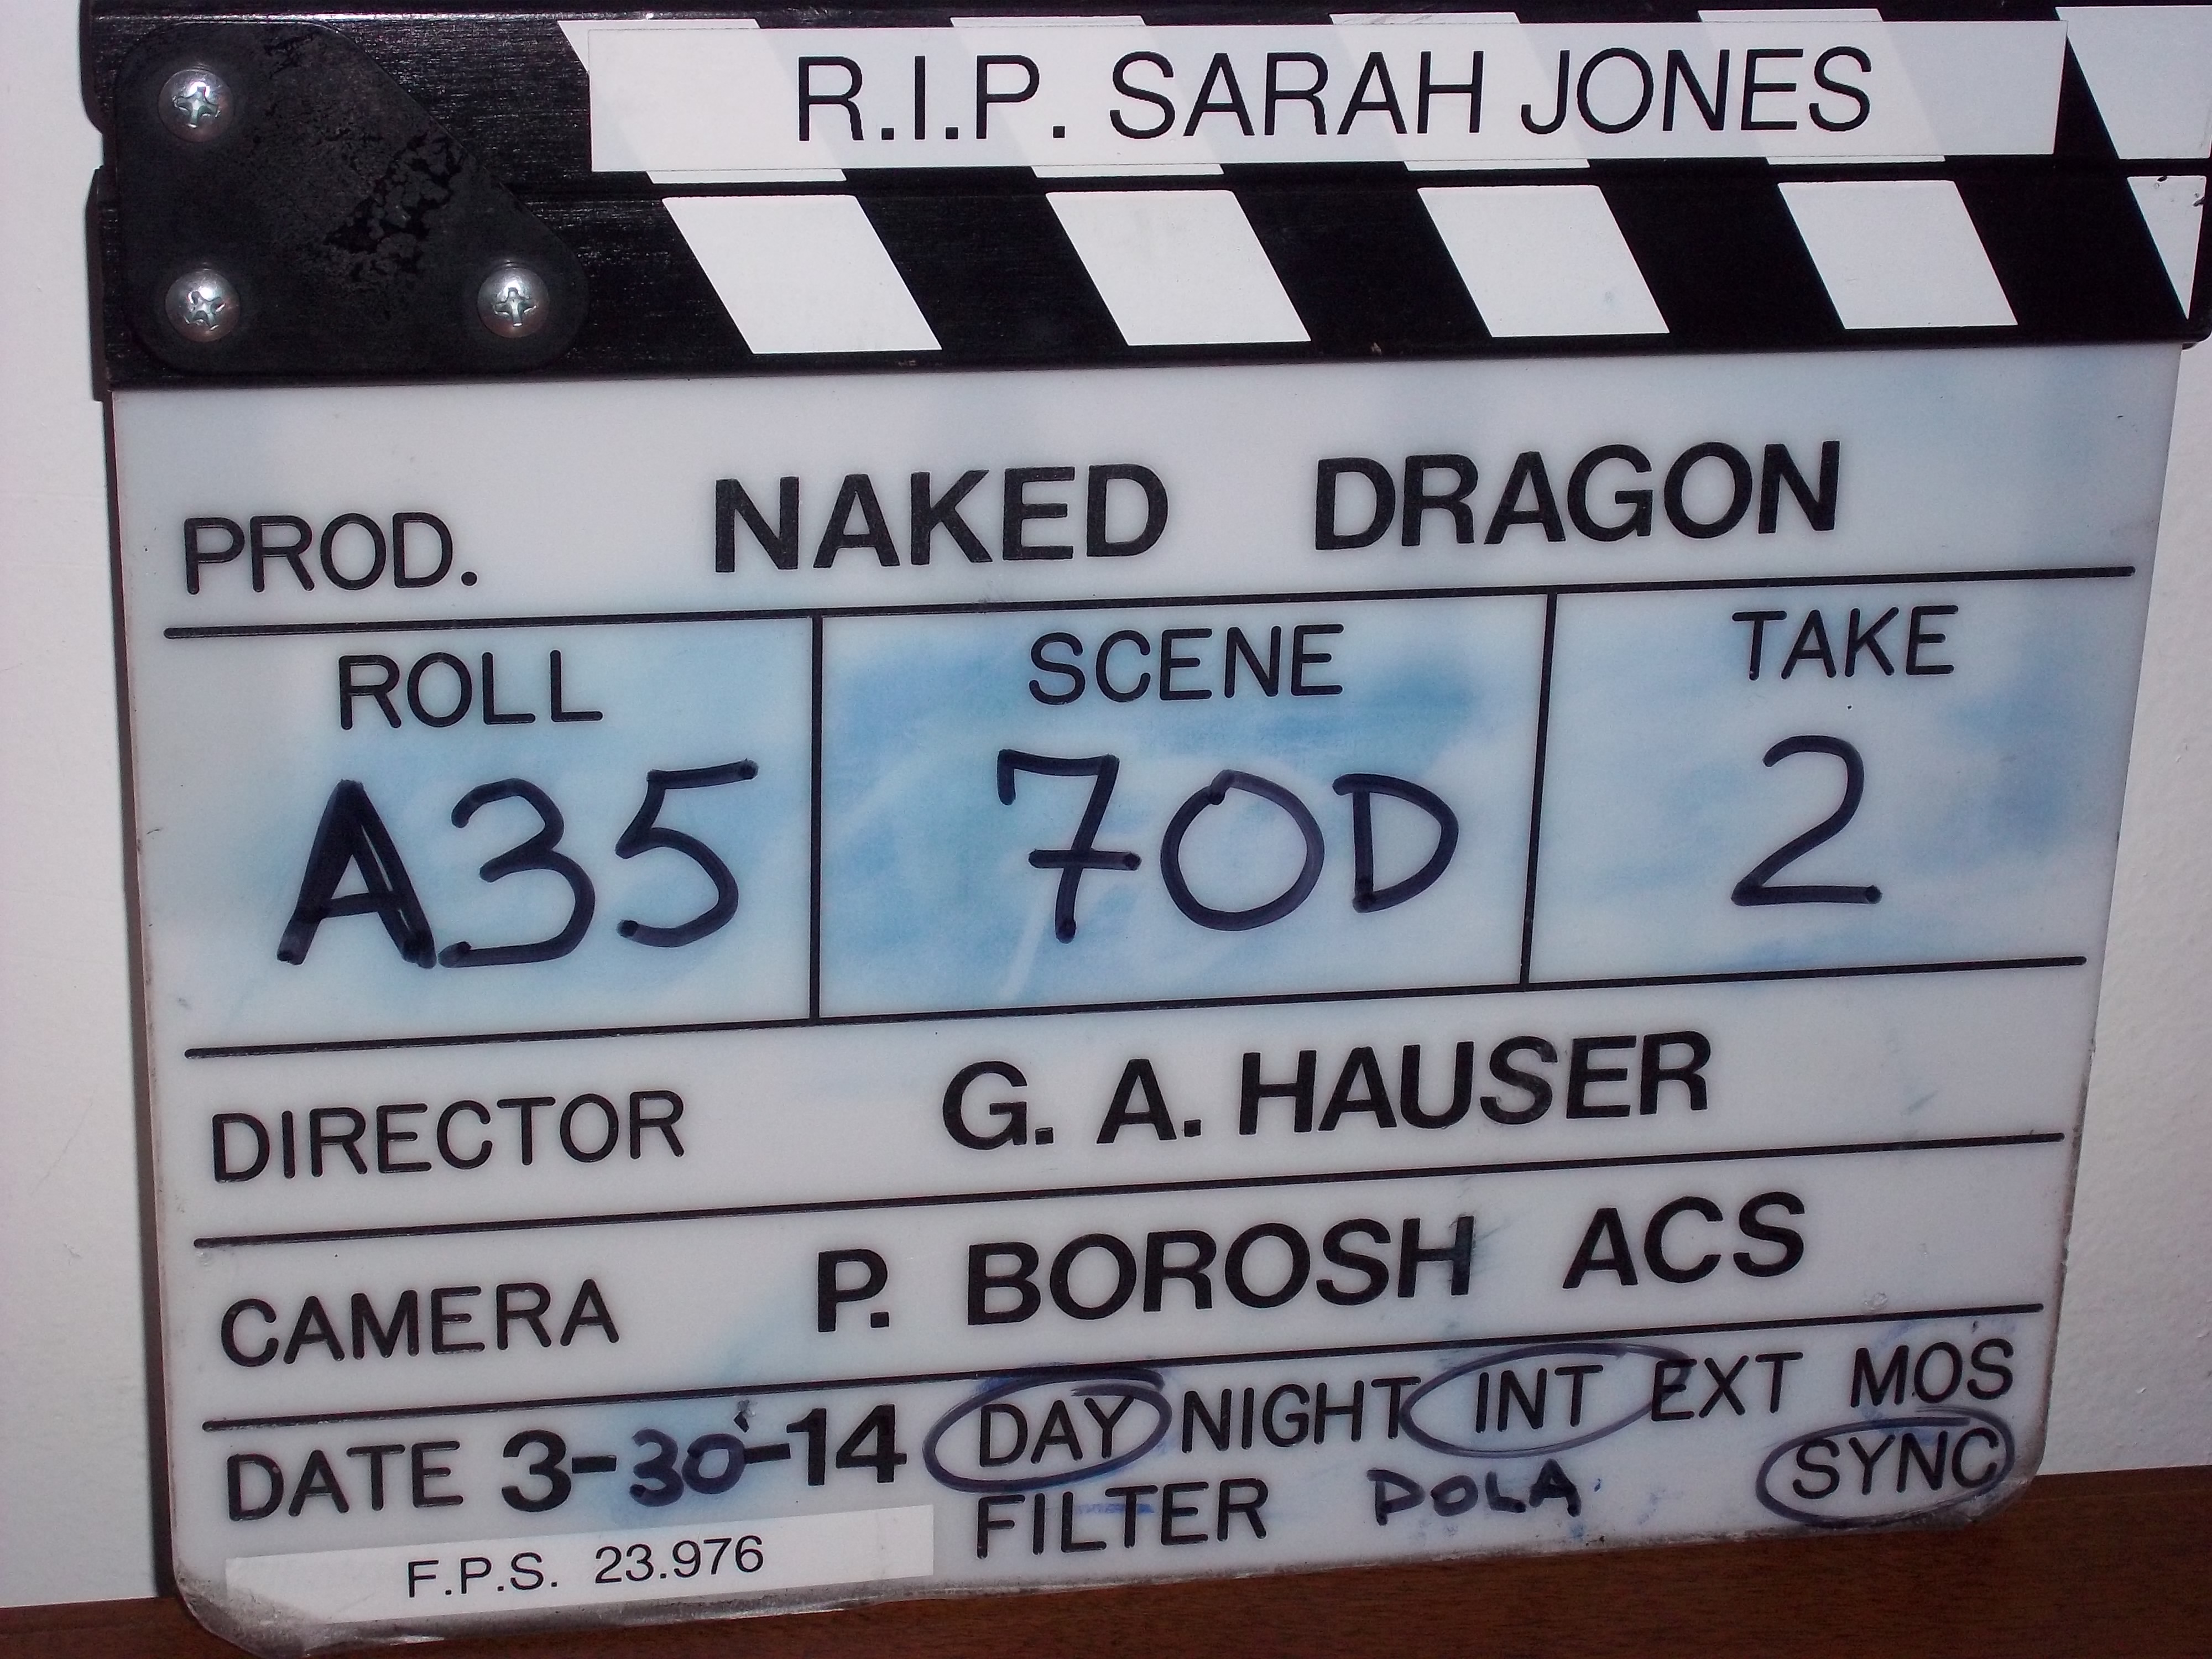 Naked Dragon- interracial gay romance coming soon